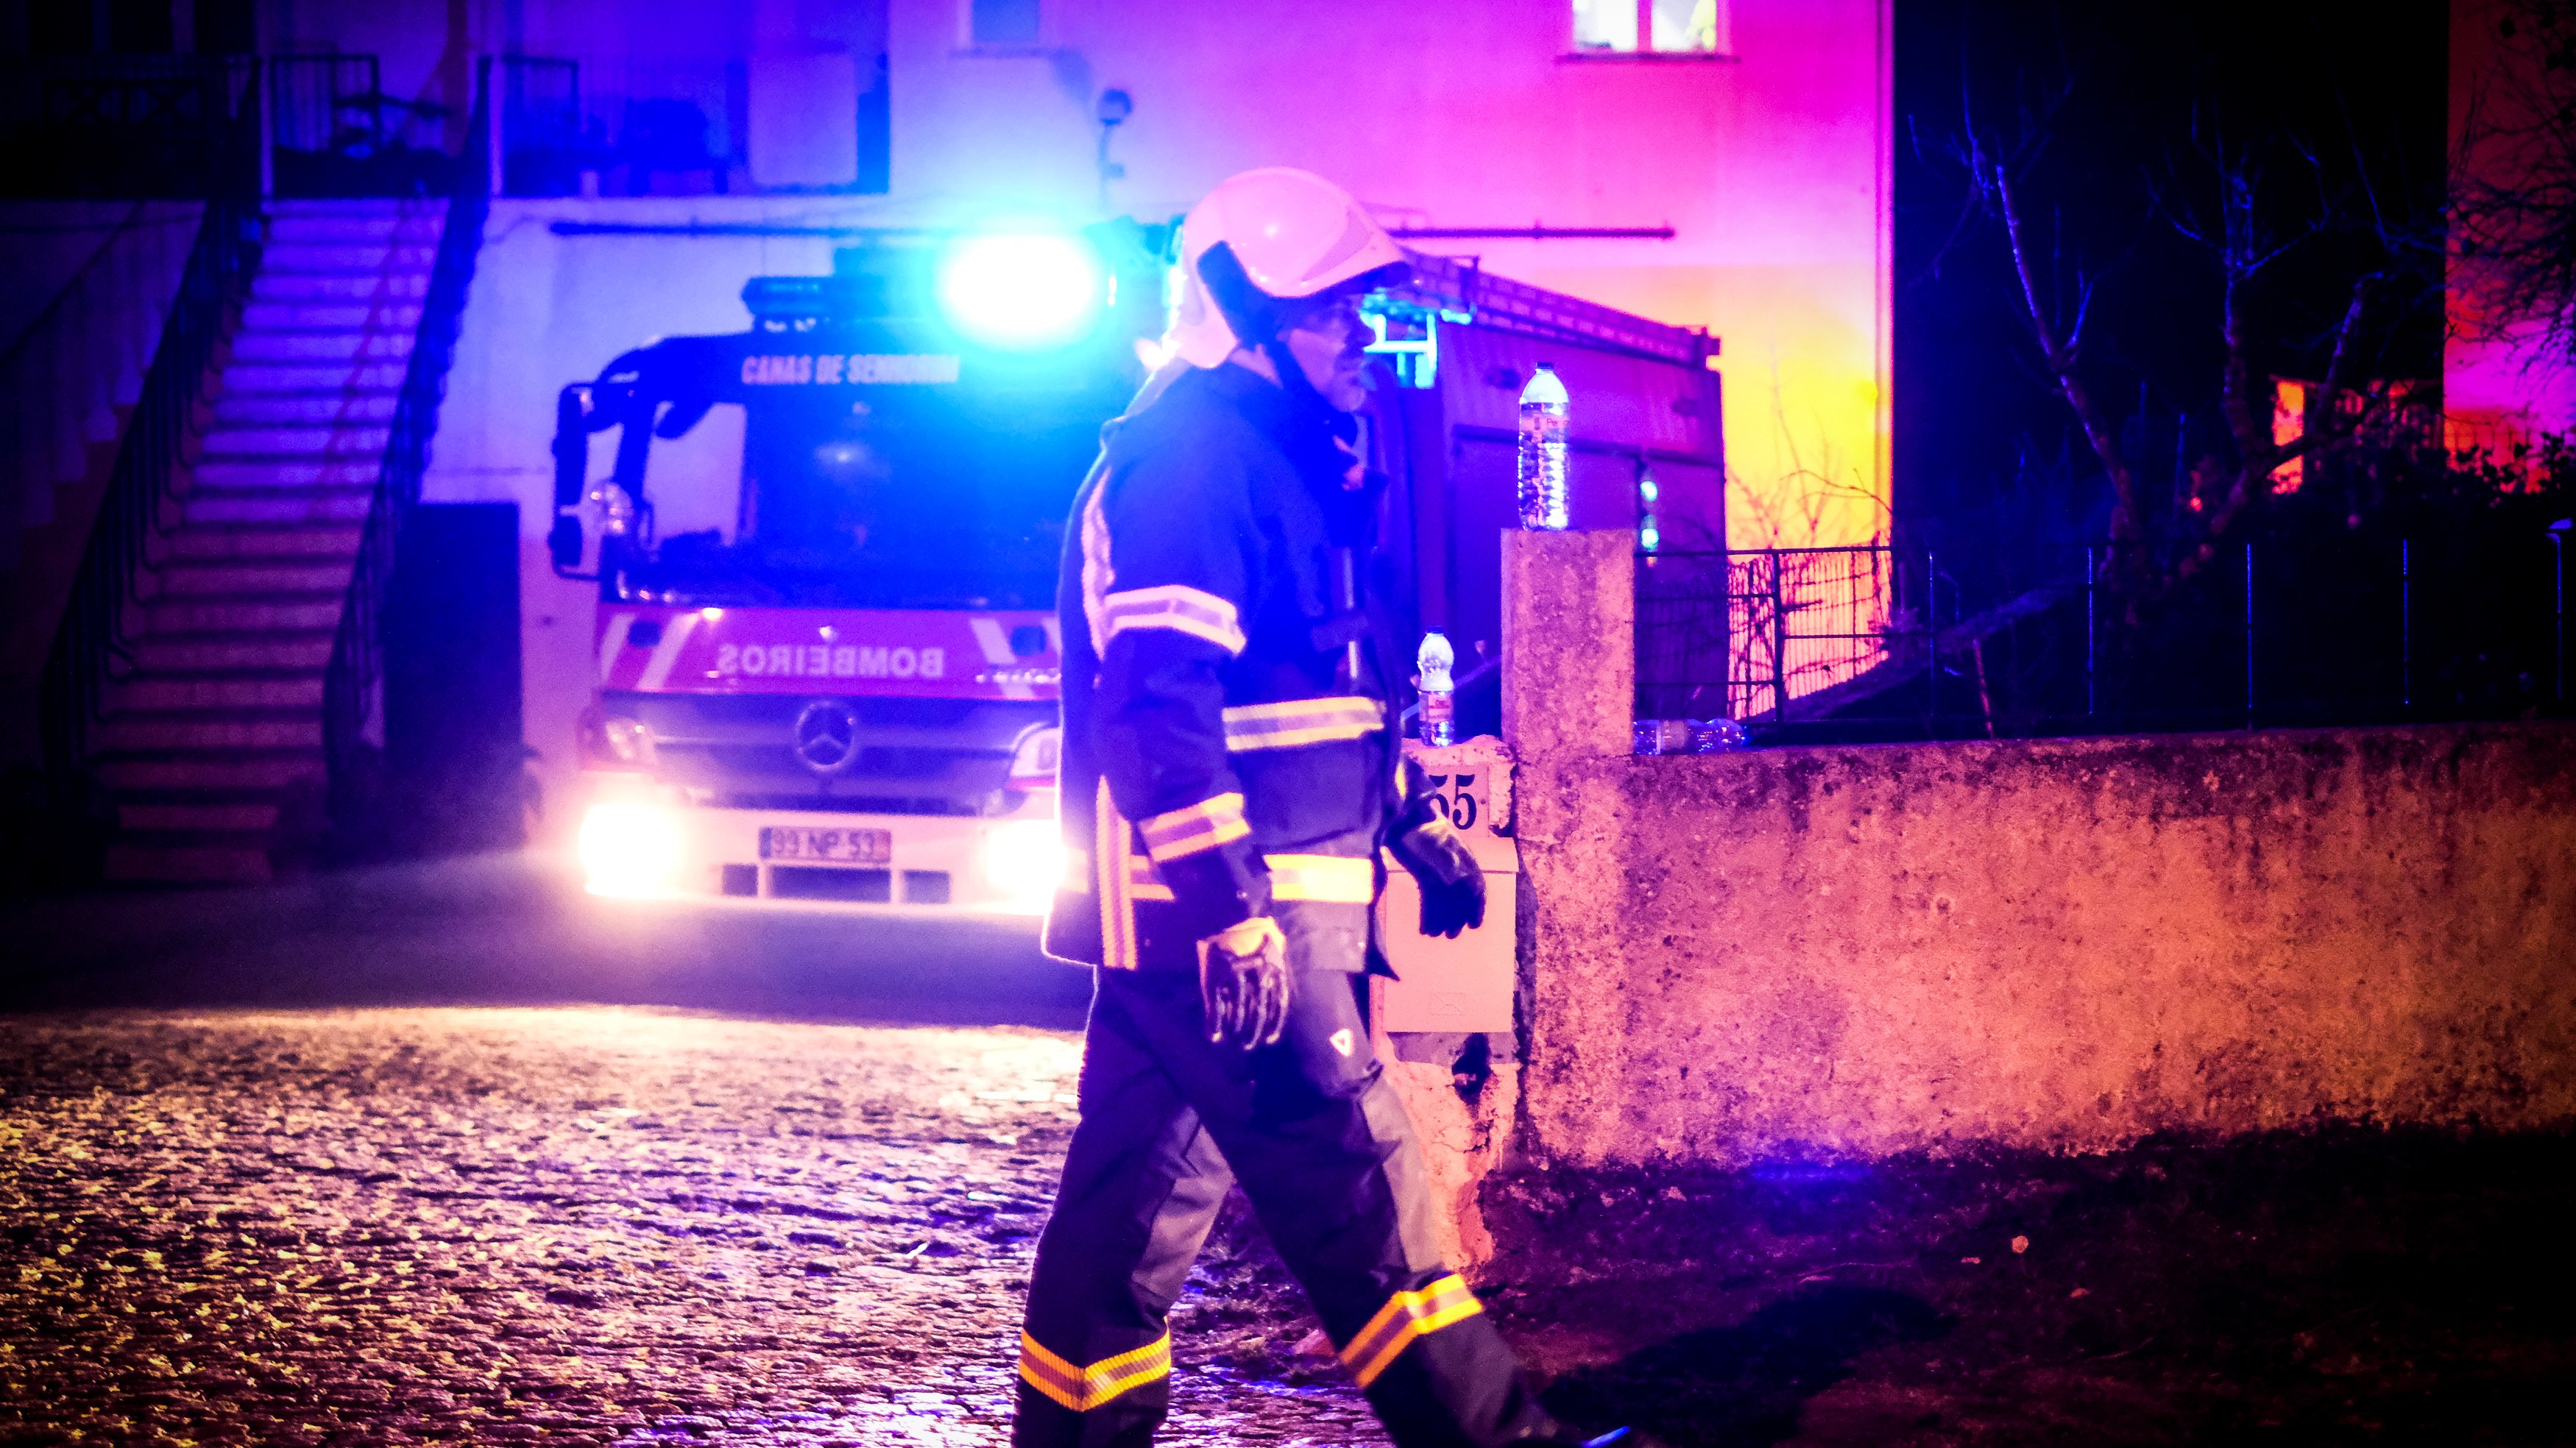 Nelas, 17/02/2022 - Um homem de 62 anos provocou um incêndio e explosões numa antiga serralharia em Vale de Madeiros, Nelas, quando os bombeiros e a policia chegaram, ele alvejou-os com uma caçadeira, resultaram em 6 pessoas feridas. (Rui Oliveira/Observador)